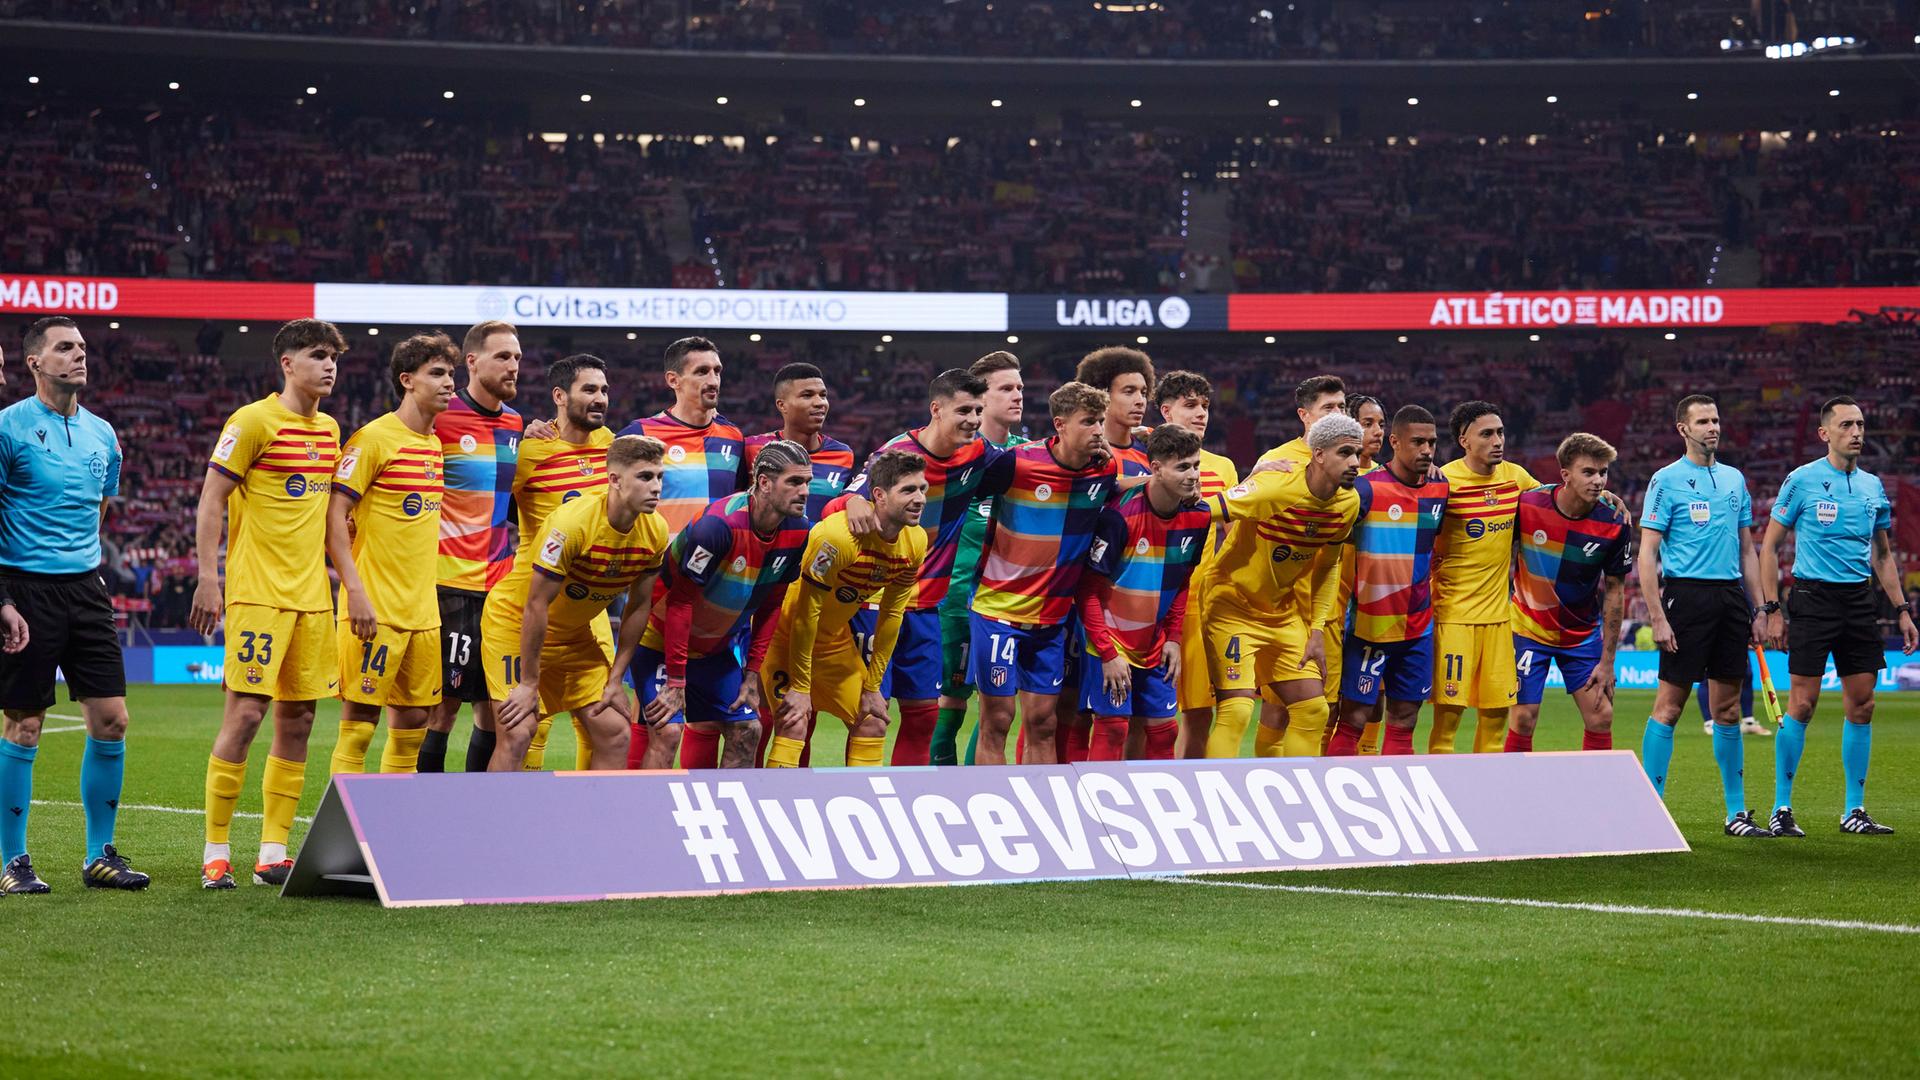 Aspectos del problema del racismo en el fútbol español